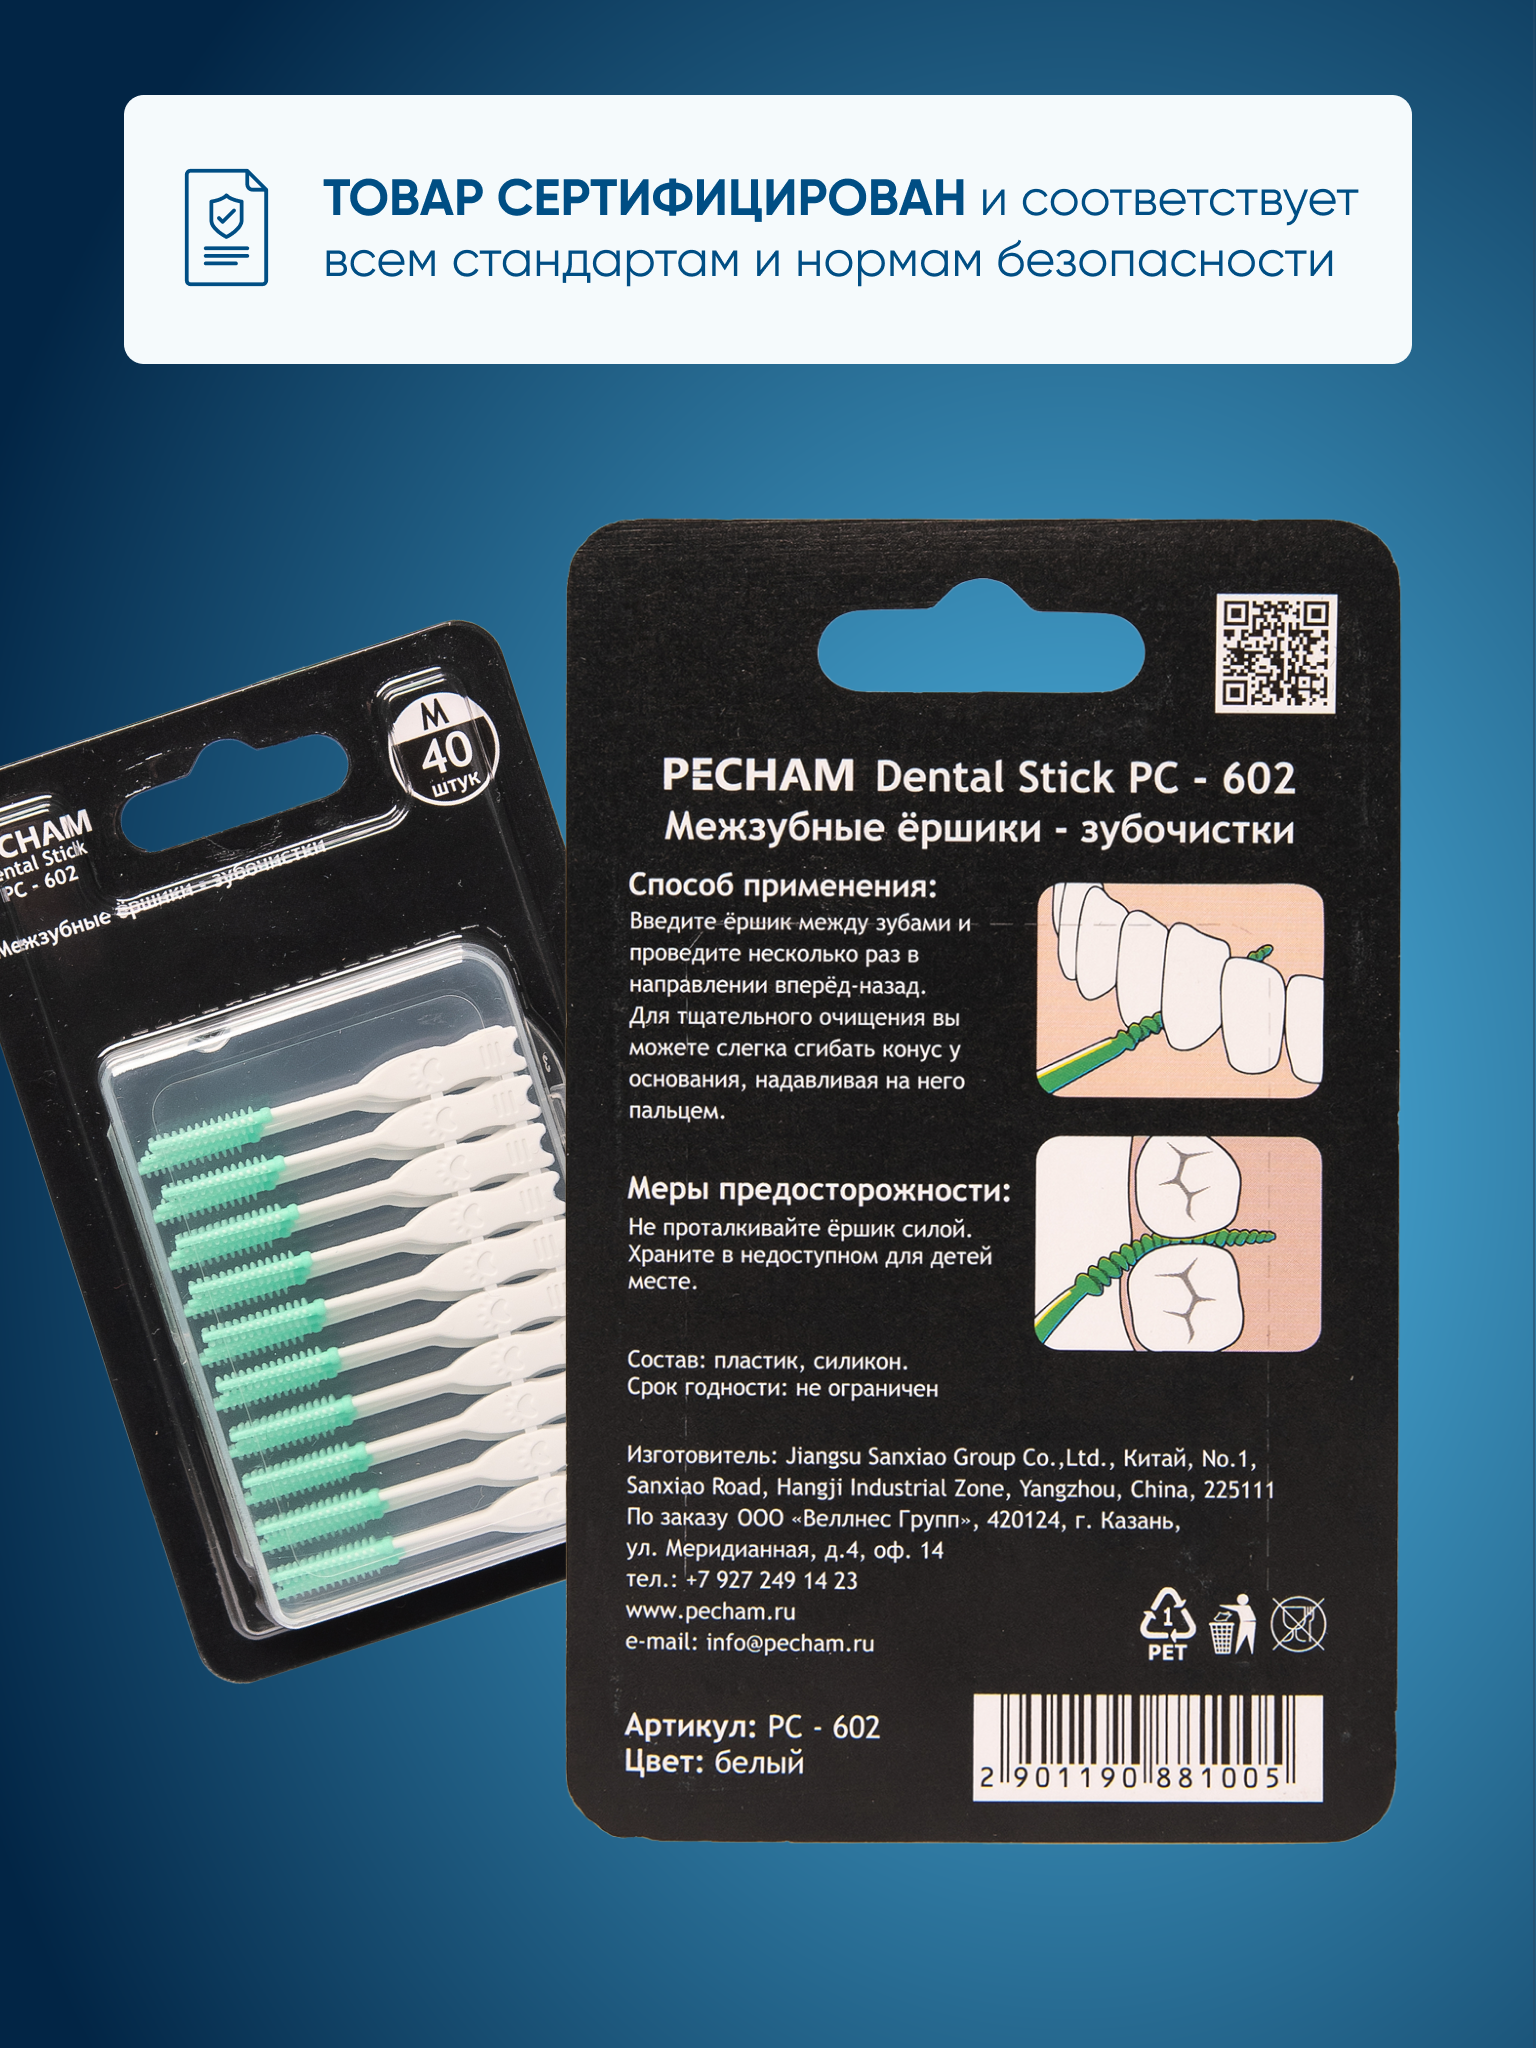 Межзубные ёршики-зубочистки PECHAM Dental Stick РС-602 - фото 6